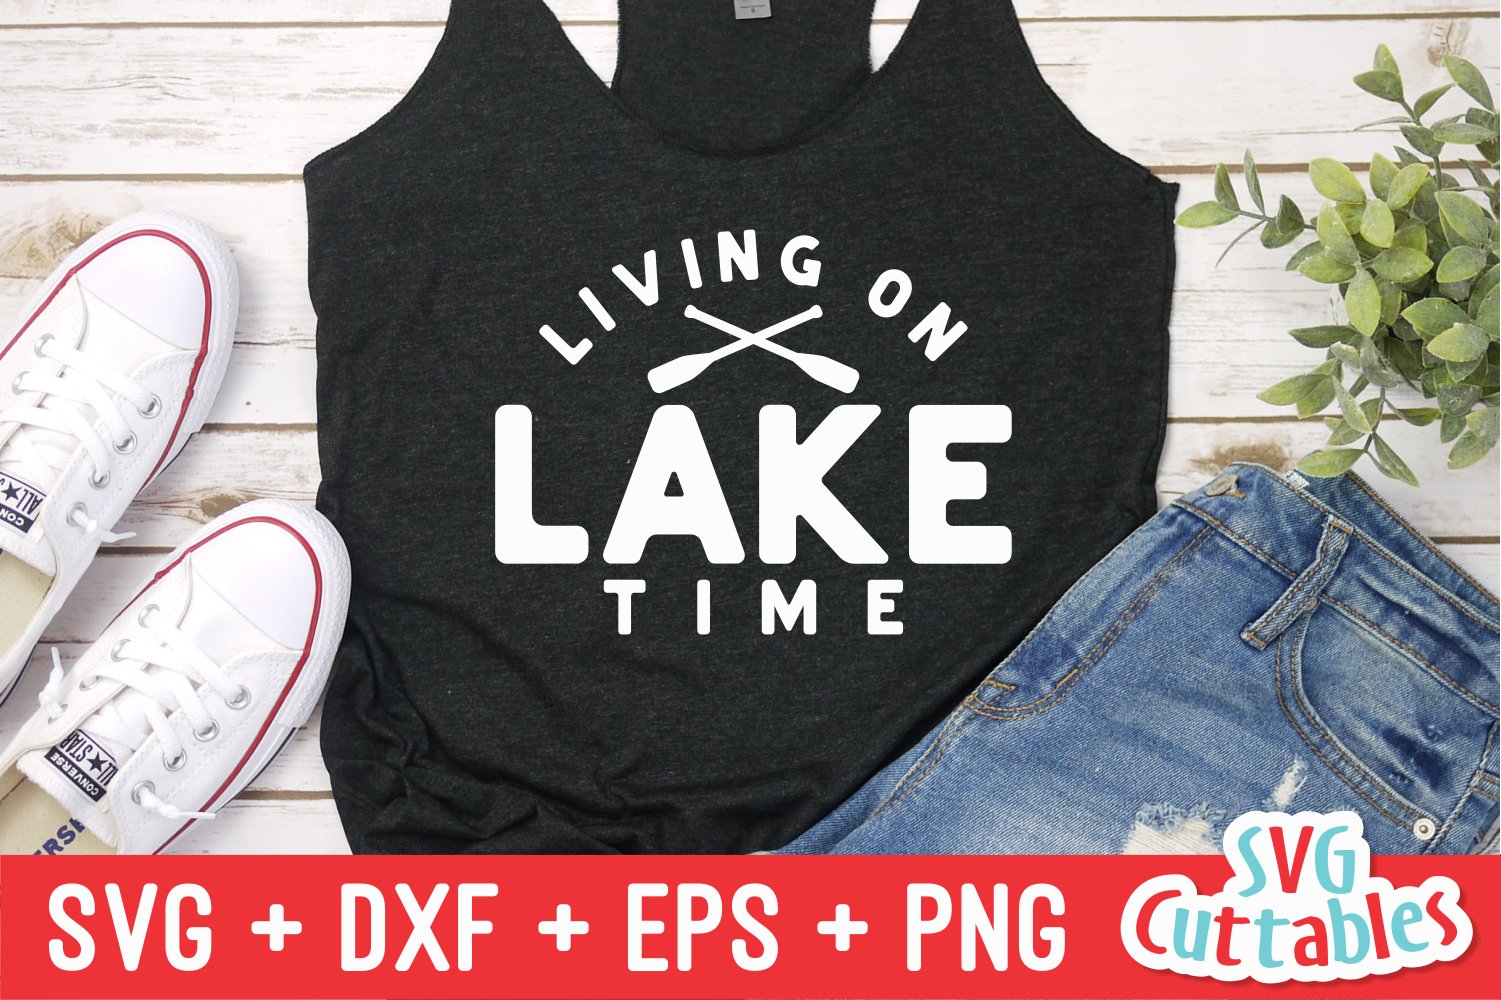 Enjoy your life living on lake time.